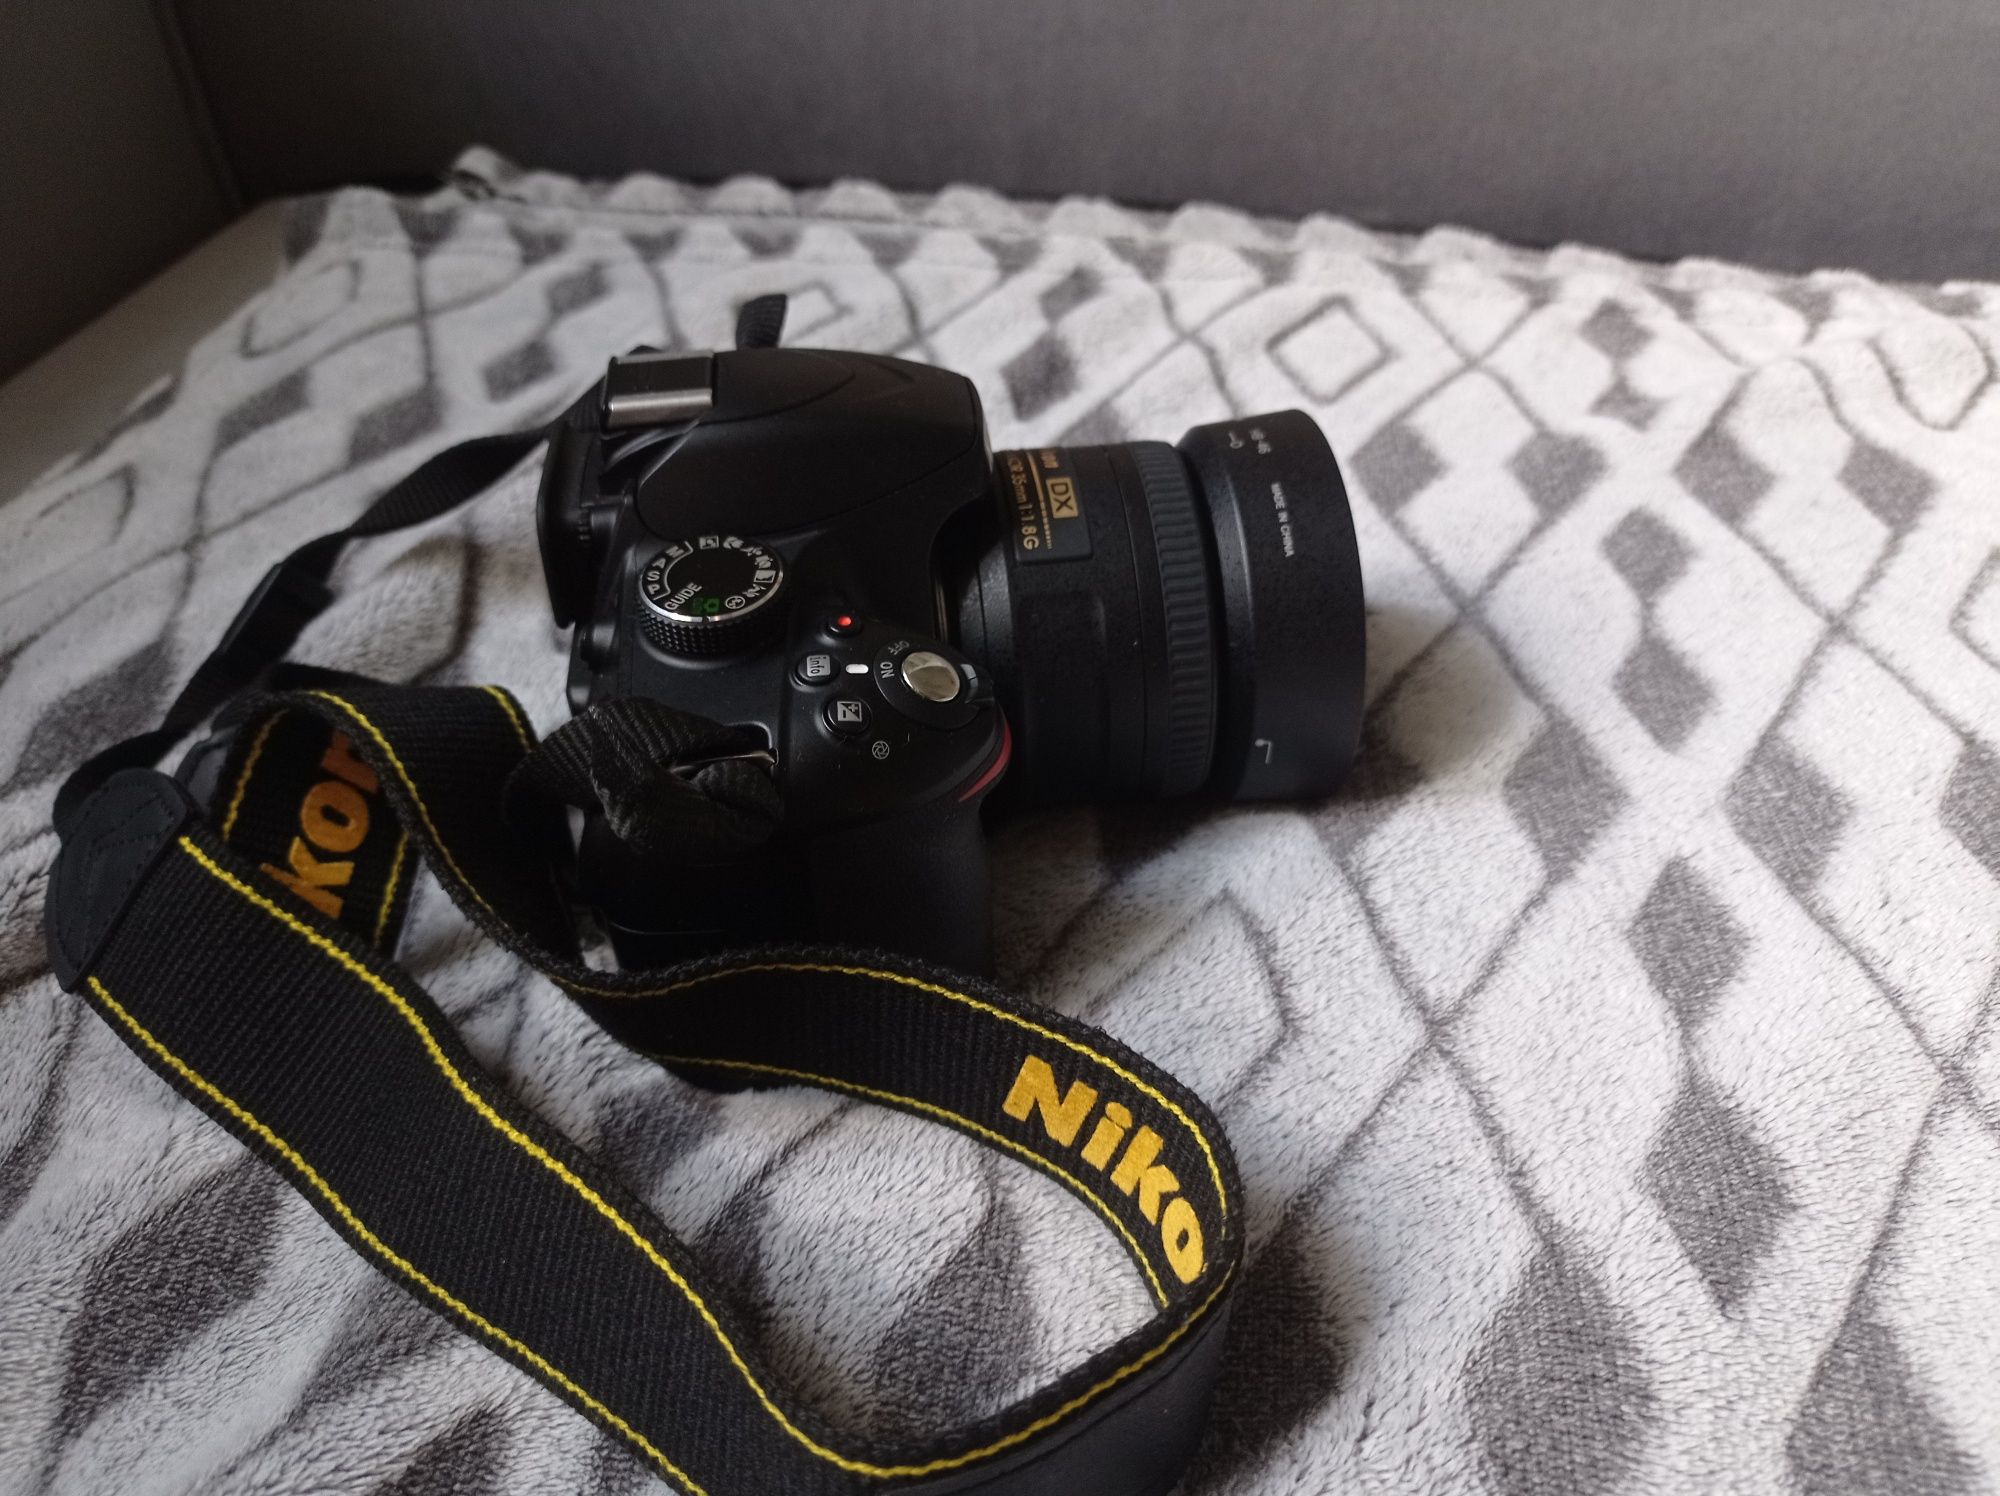 Aparat lustrzanka Nikon D3200 dwa obiektywy AF-S nikkor 35mm 18-55mm